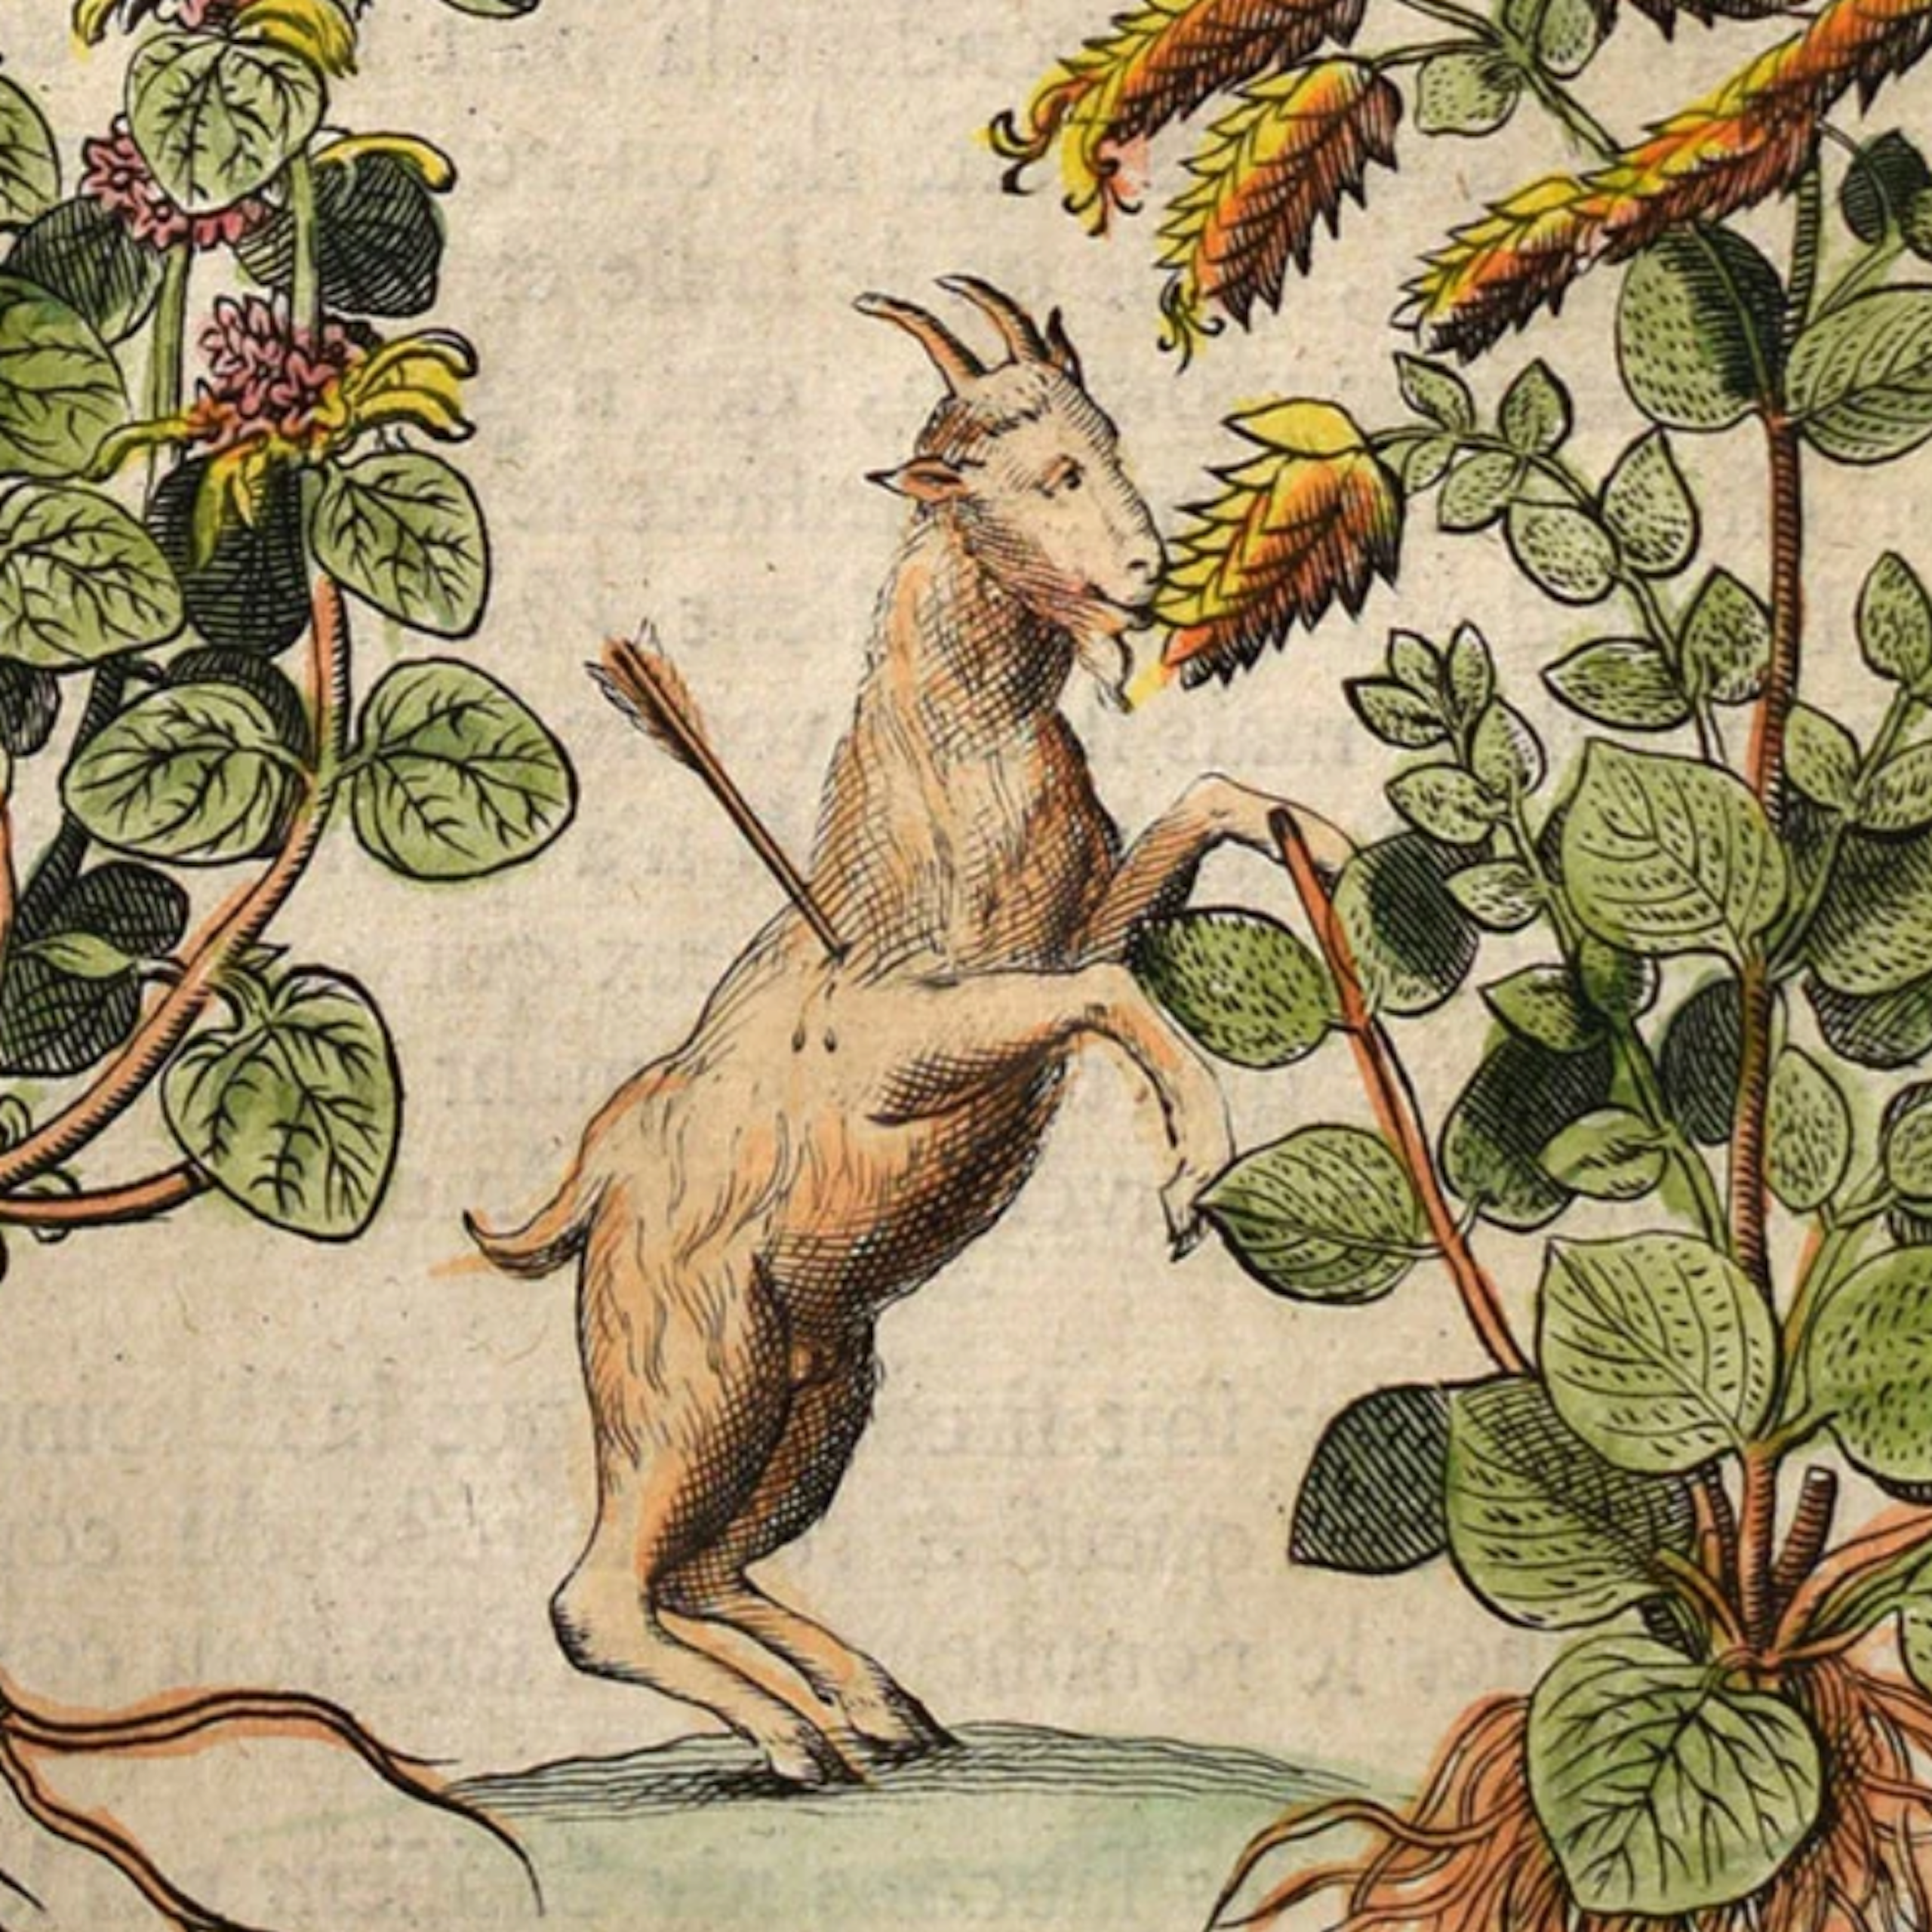 Impressão de uma cabra nas patas traseiras com uma flecha no lado, comendo de uma planta alta